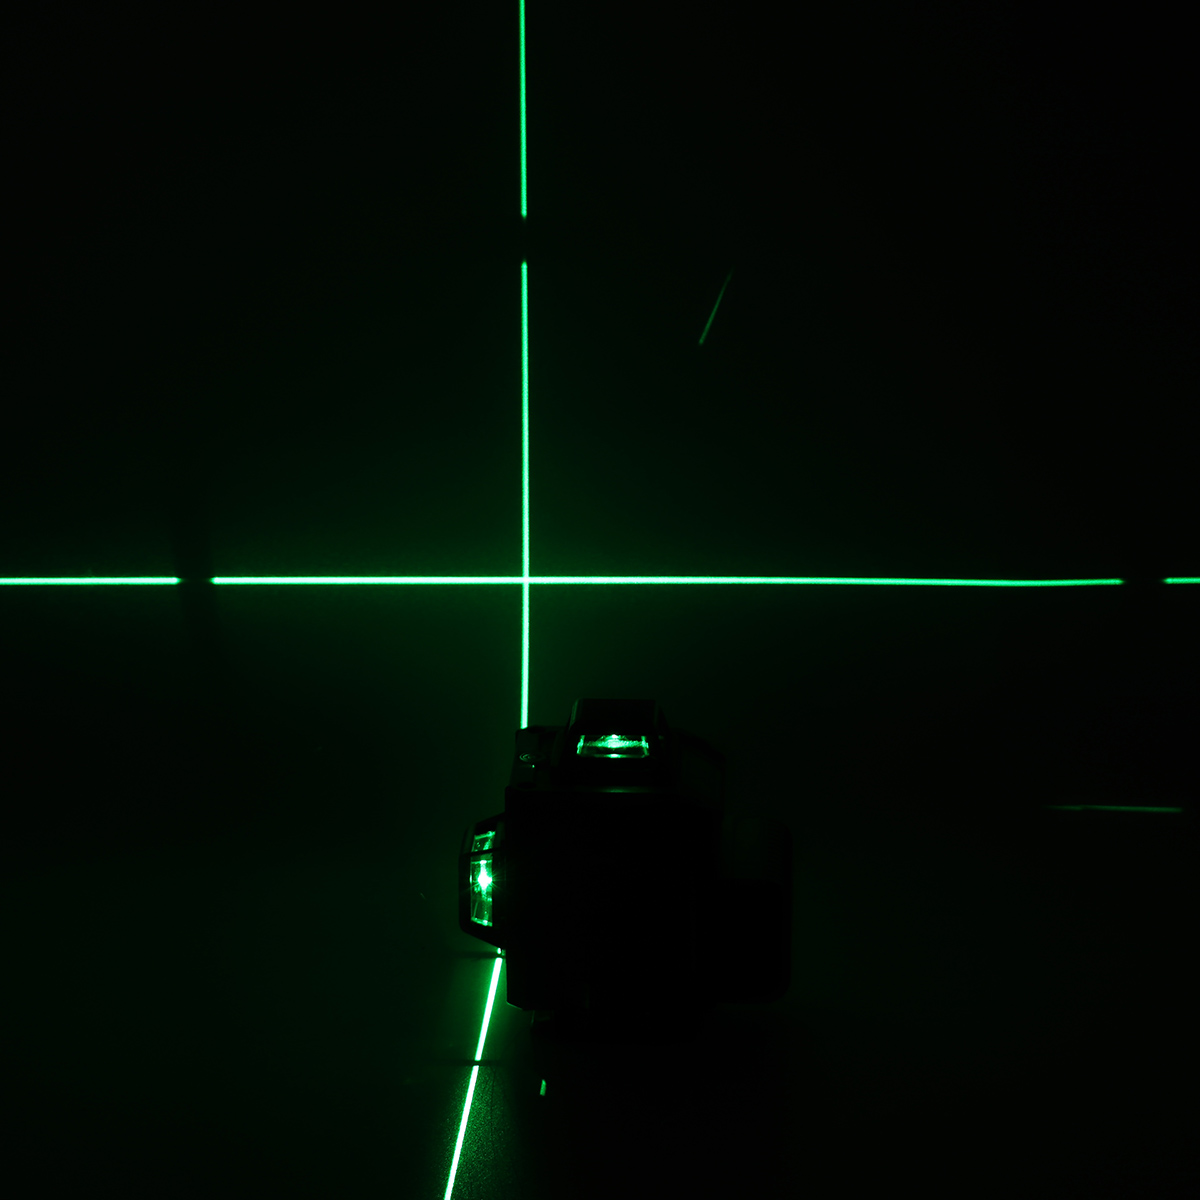 16-Line-LD-Green-Light-Laser-Level-4D-360deg-Cross-Self-Leveling-Measuring-Tool-1715020-10